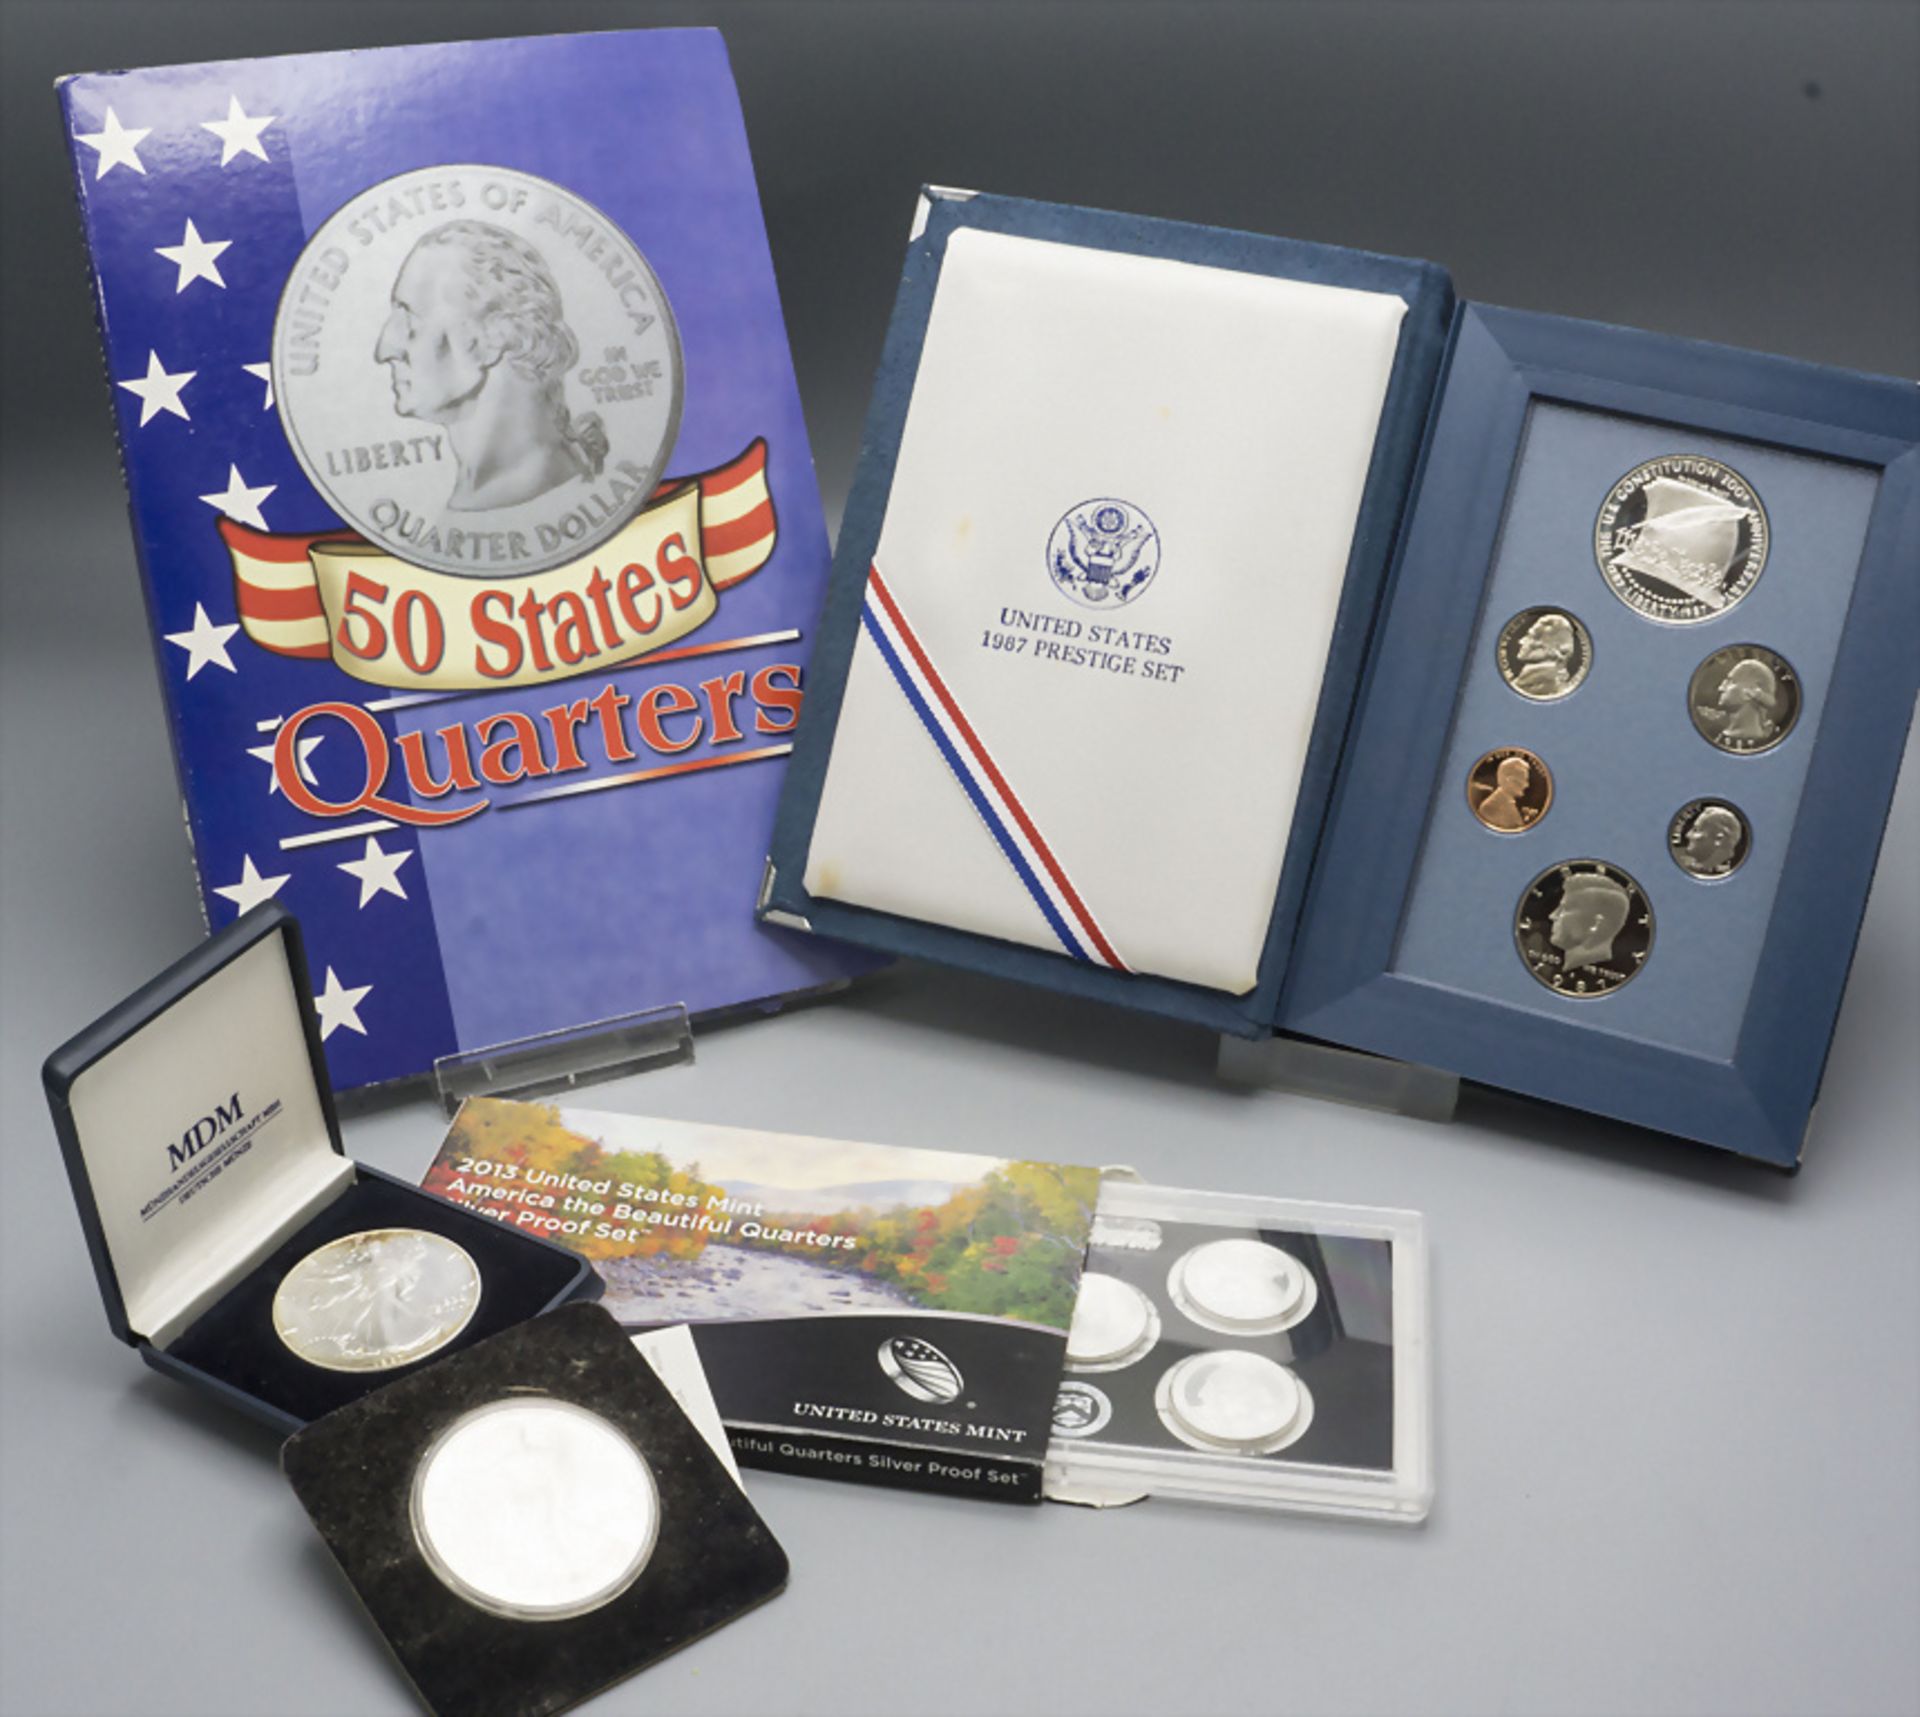 Sammlung Münzen 'USA' / A collection of US coins